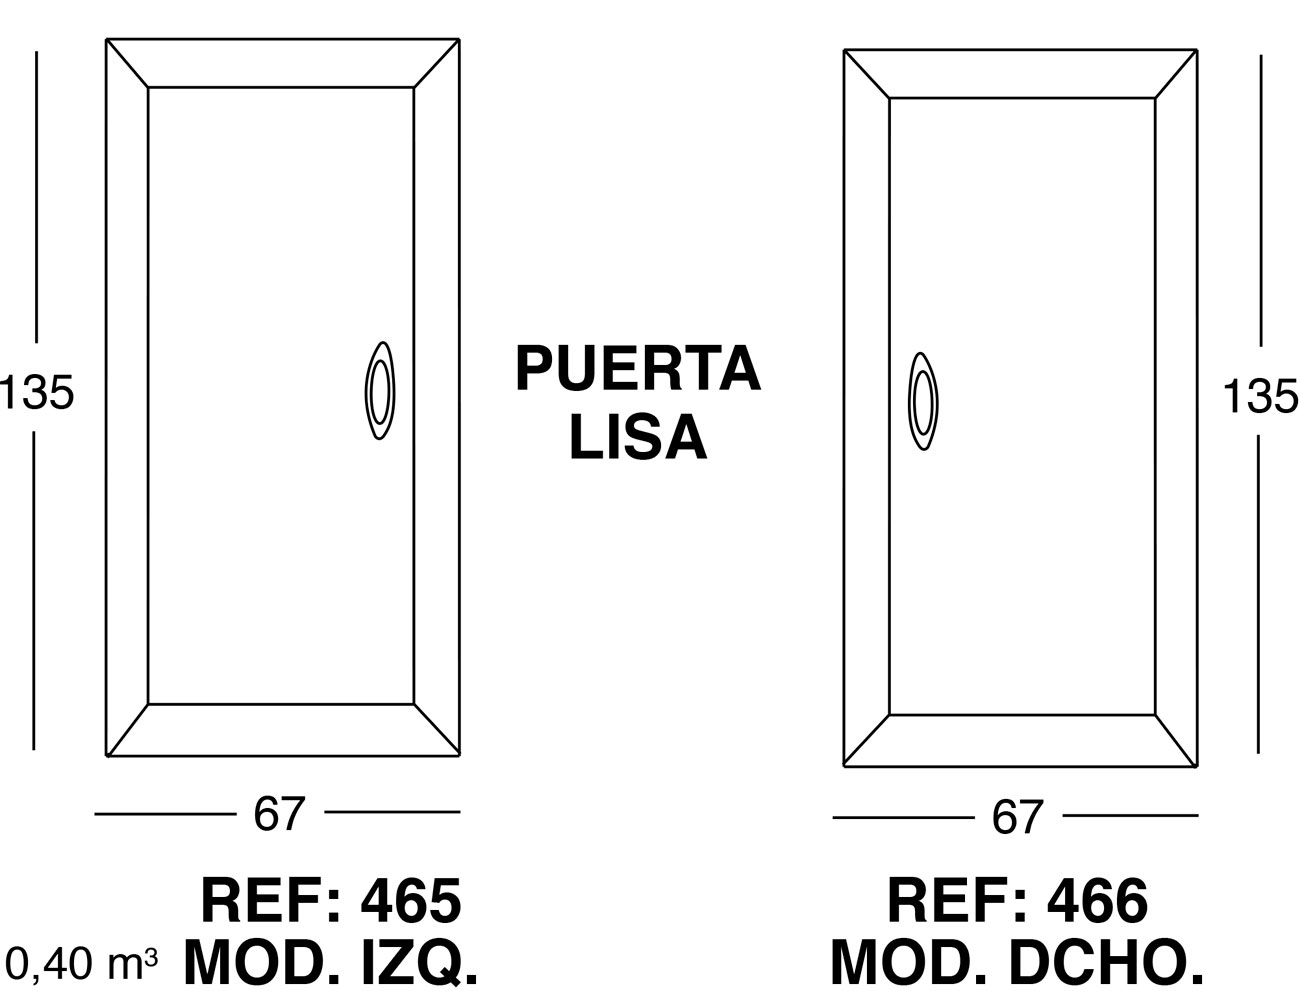 Puerta lisa1